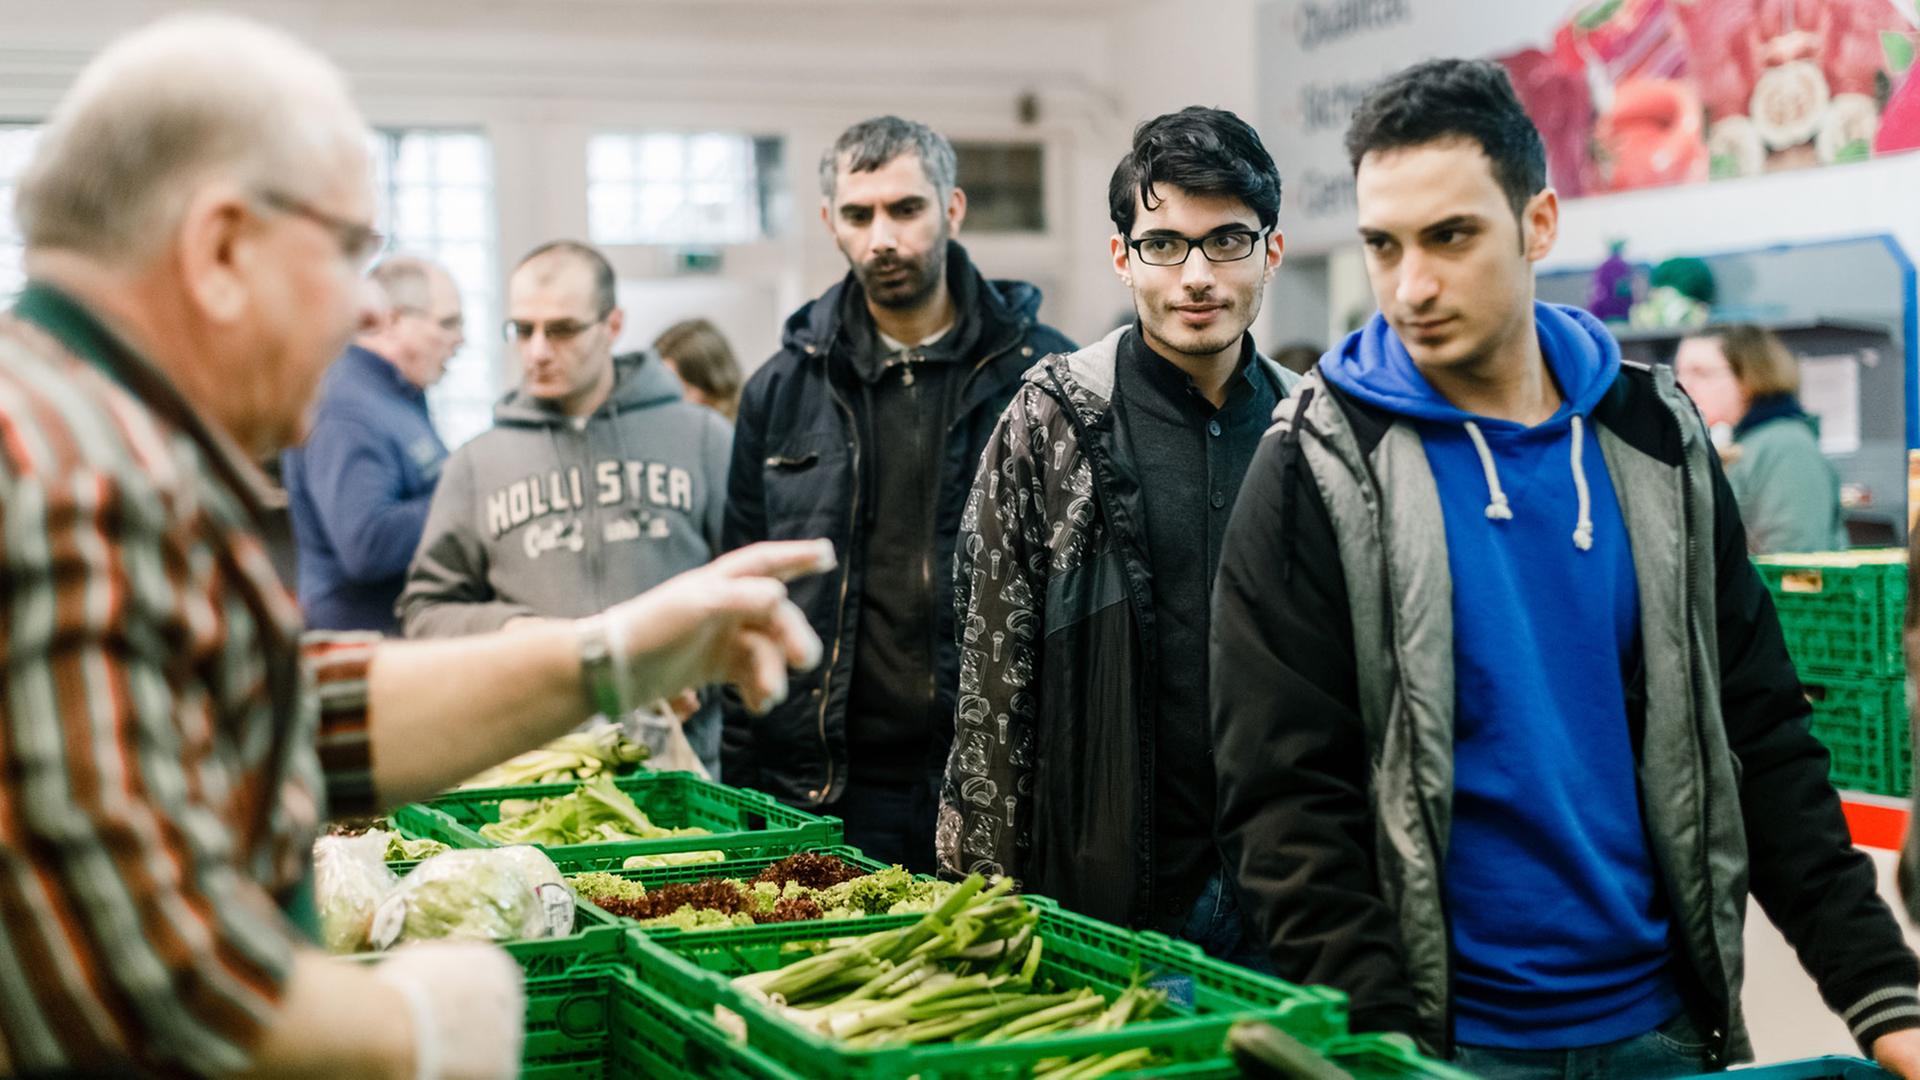 Ein ehrenamtlicher Mitarbeiter gibt am 30.12.2015 in Flensburg (Schleswig-Holstein) im Verteilraum der Flenburger Tafel Lebensmittel unter anderem an syrische Asylbewerber aus. Foto: Markus Scholz/dpa 